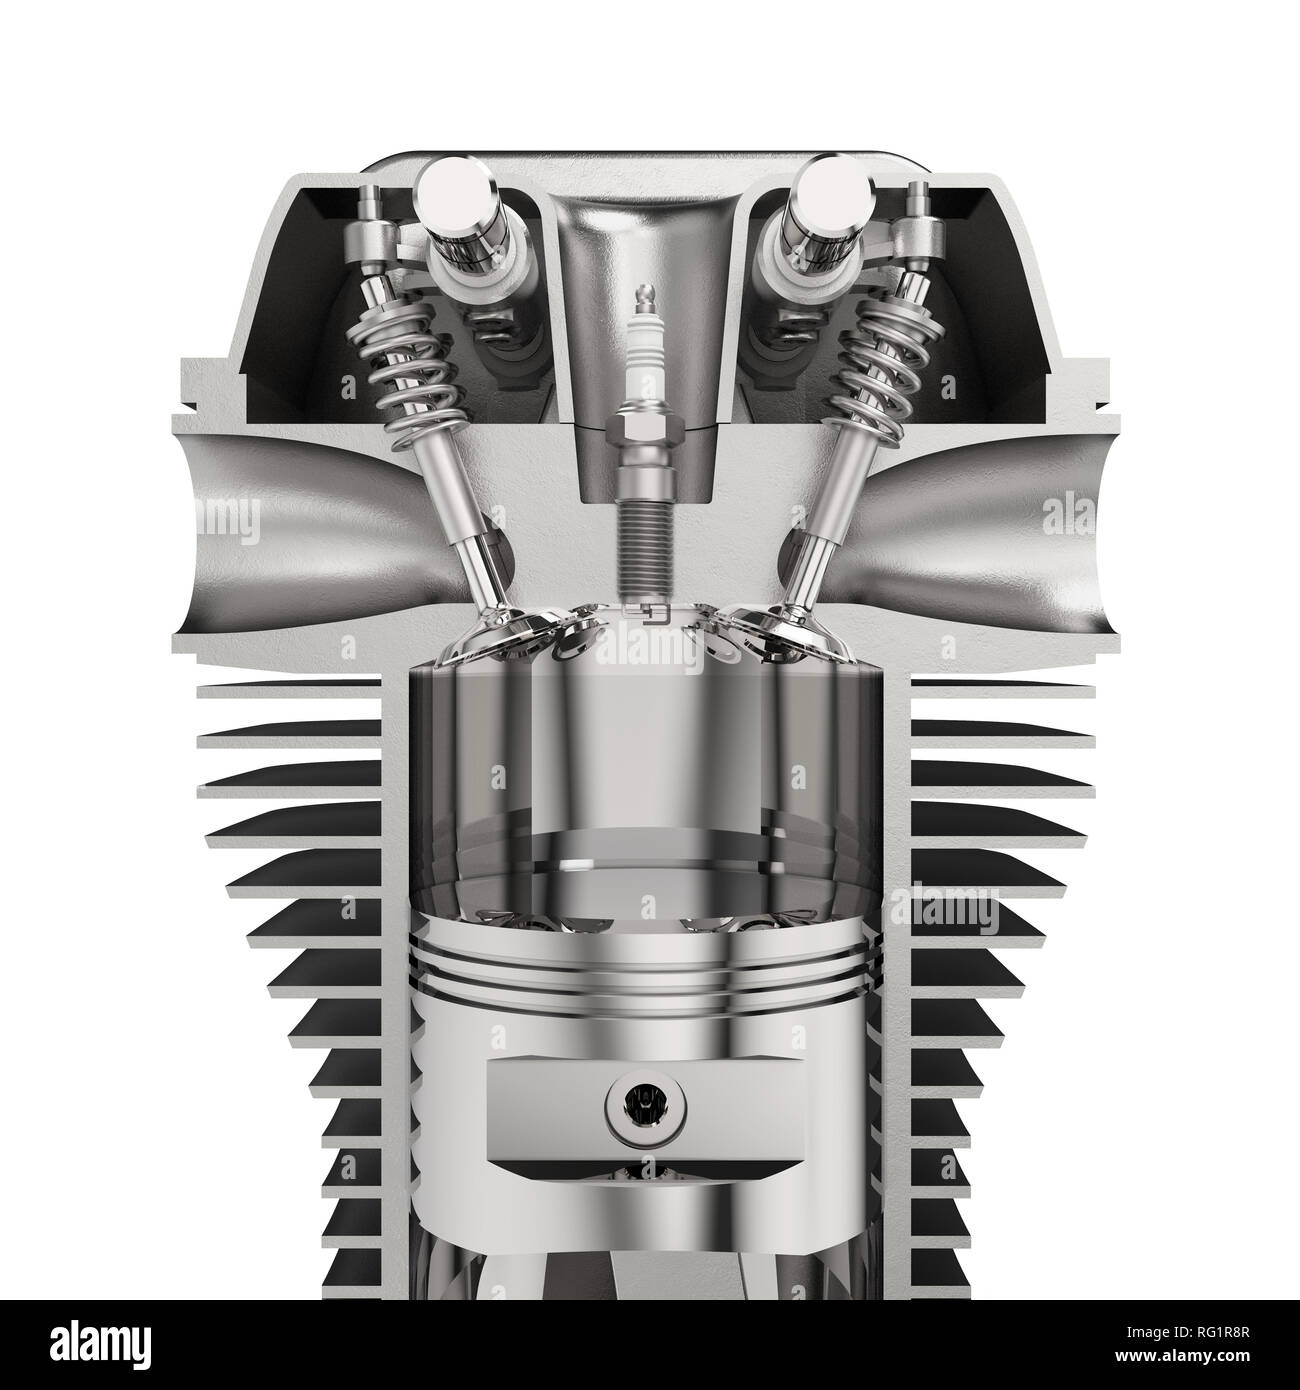 Motor mit Kolben, Zylinder und Zündkerze, auf weißem Hintergrund 3D  Rendering isoliert Stockfotografie - Alamy